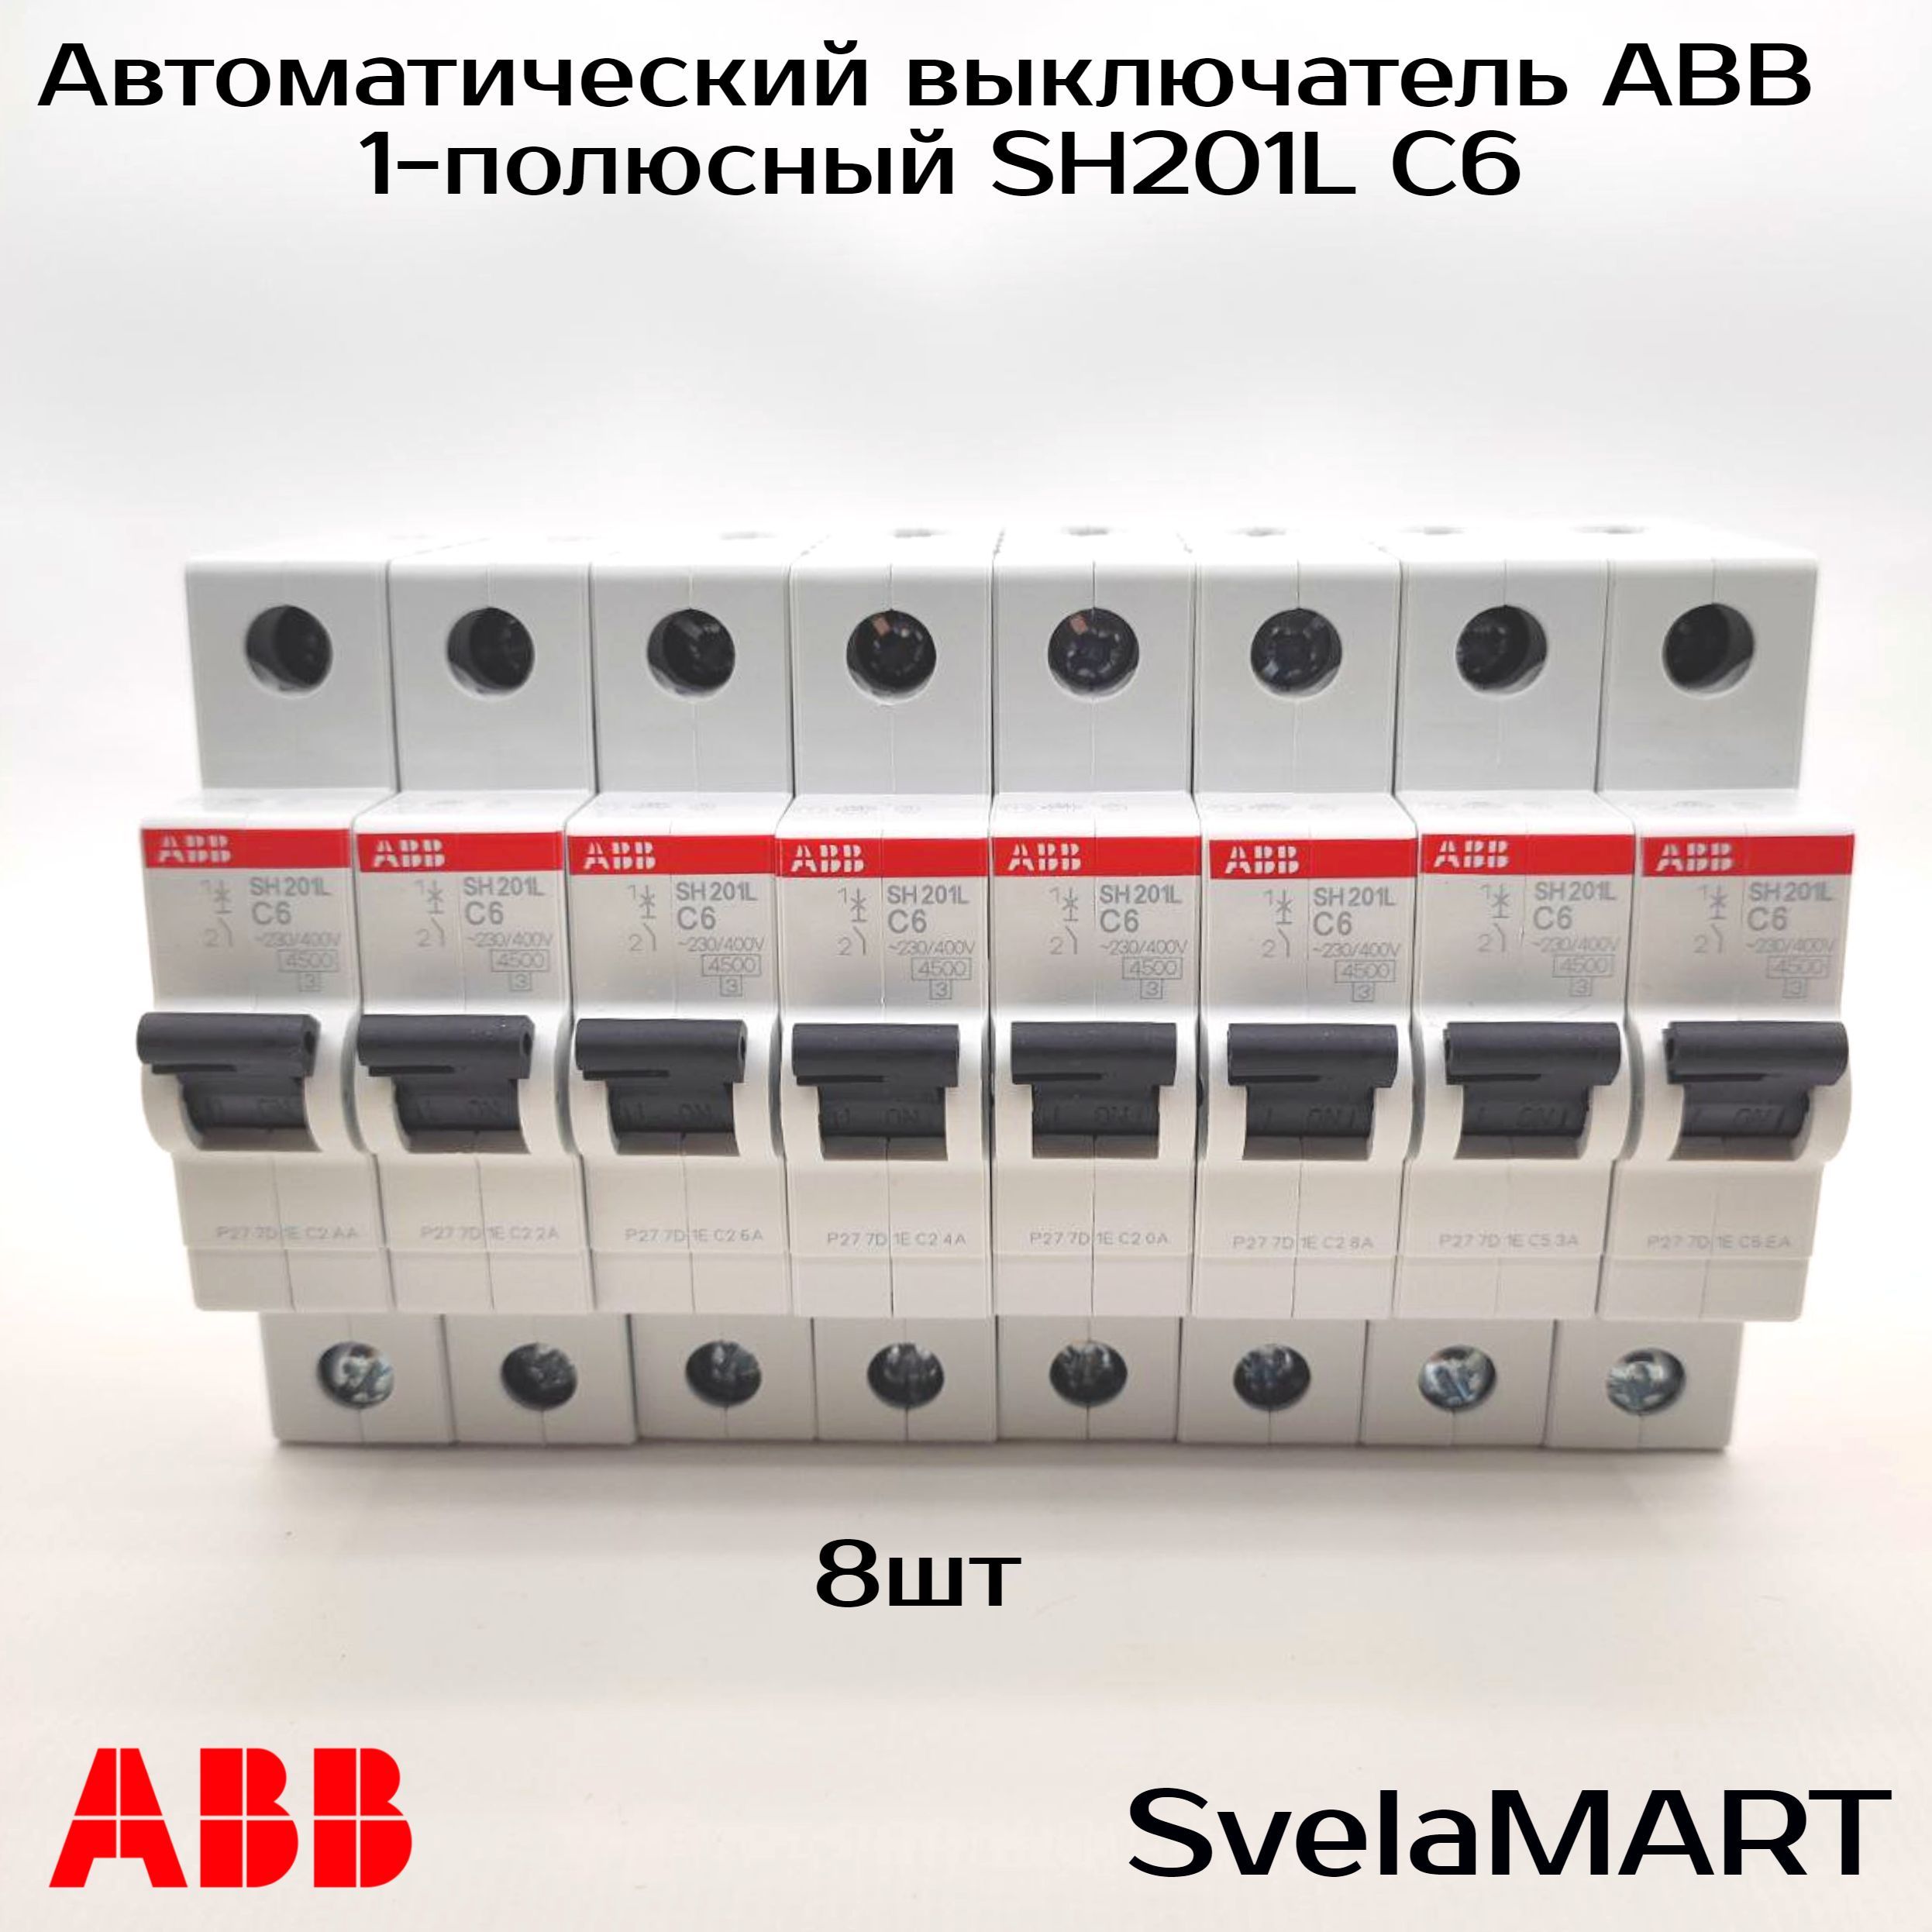 Однополюсные автоматические выключатели abb